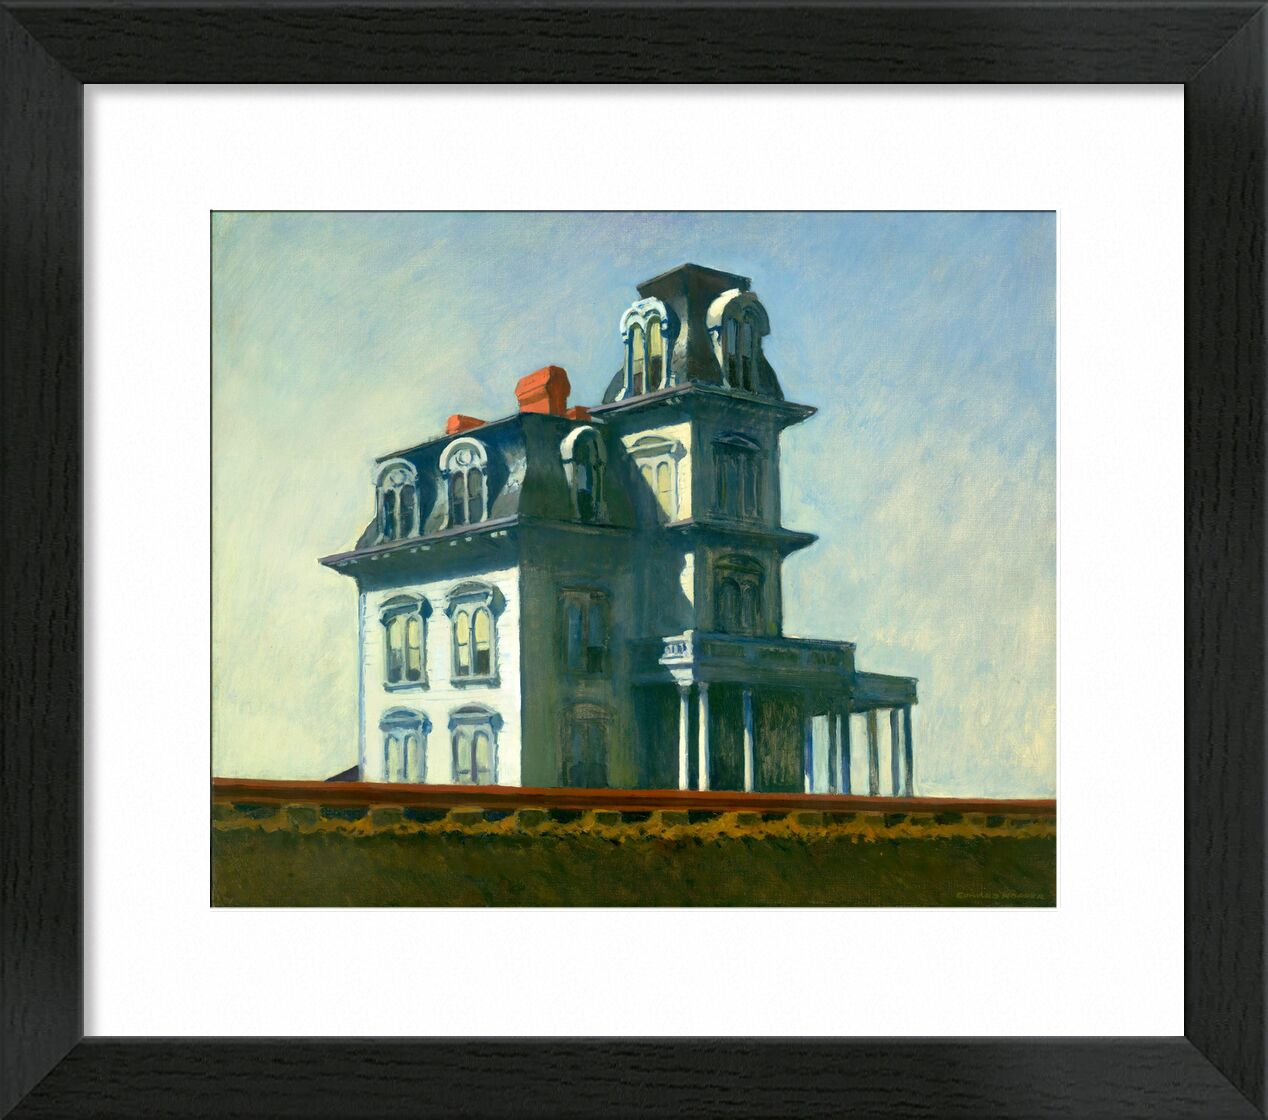 Haus an der Bahnlinie - Edward Hopper von Bildende Kunst, Prodi Art, Haus, Malerei, Himmel, blau, Eisenbahn, Edward Hopper